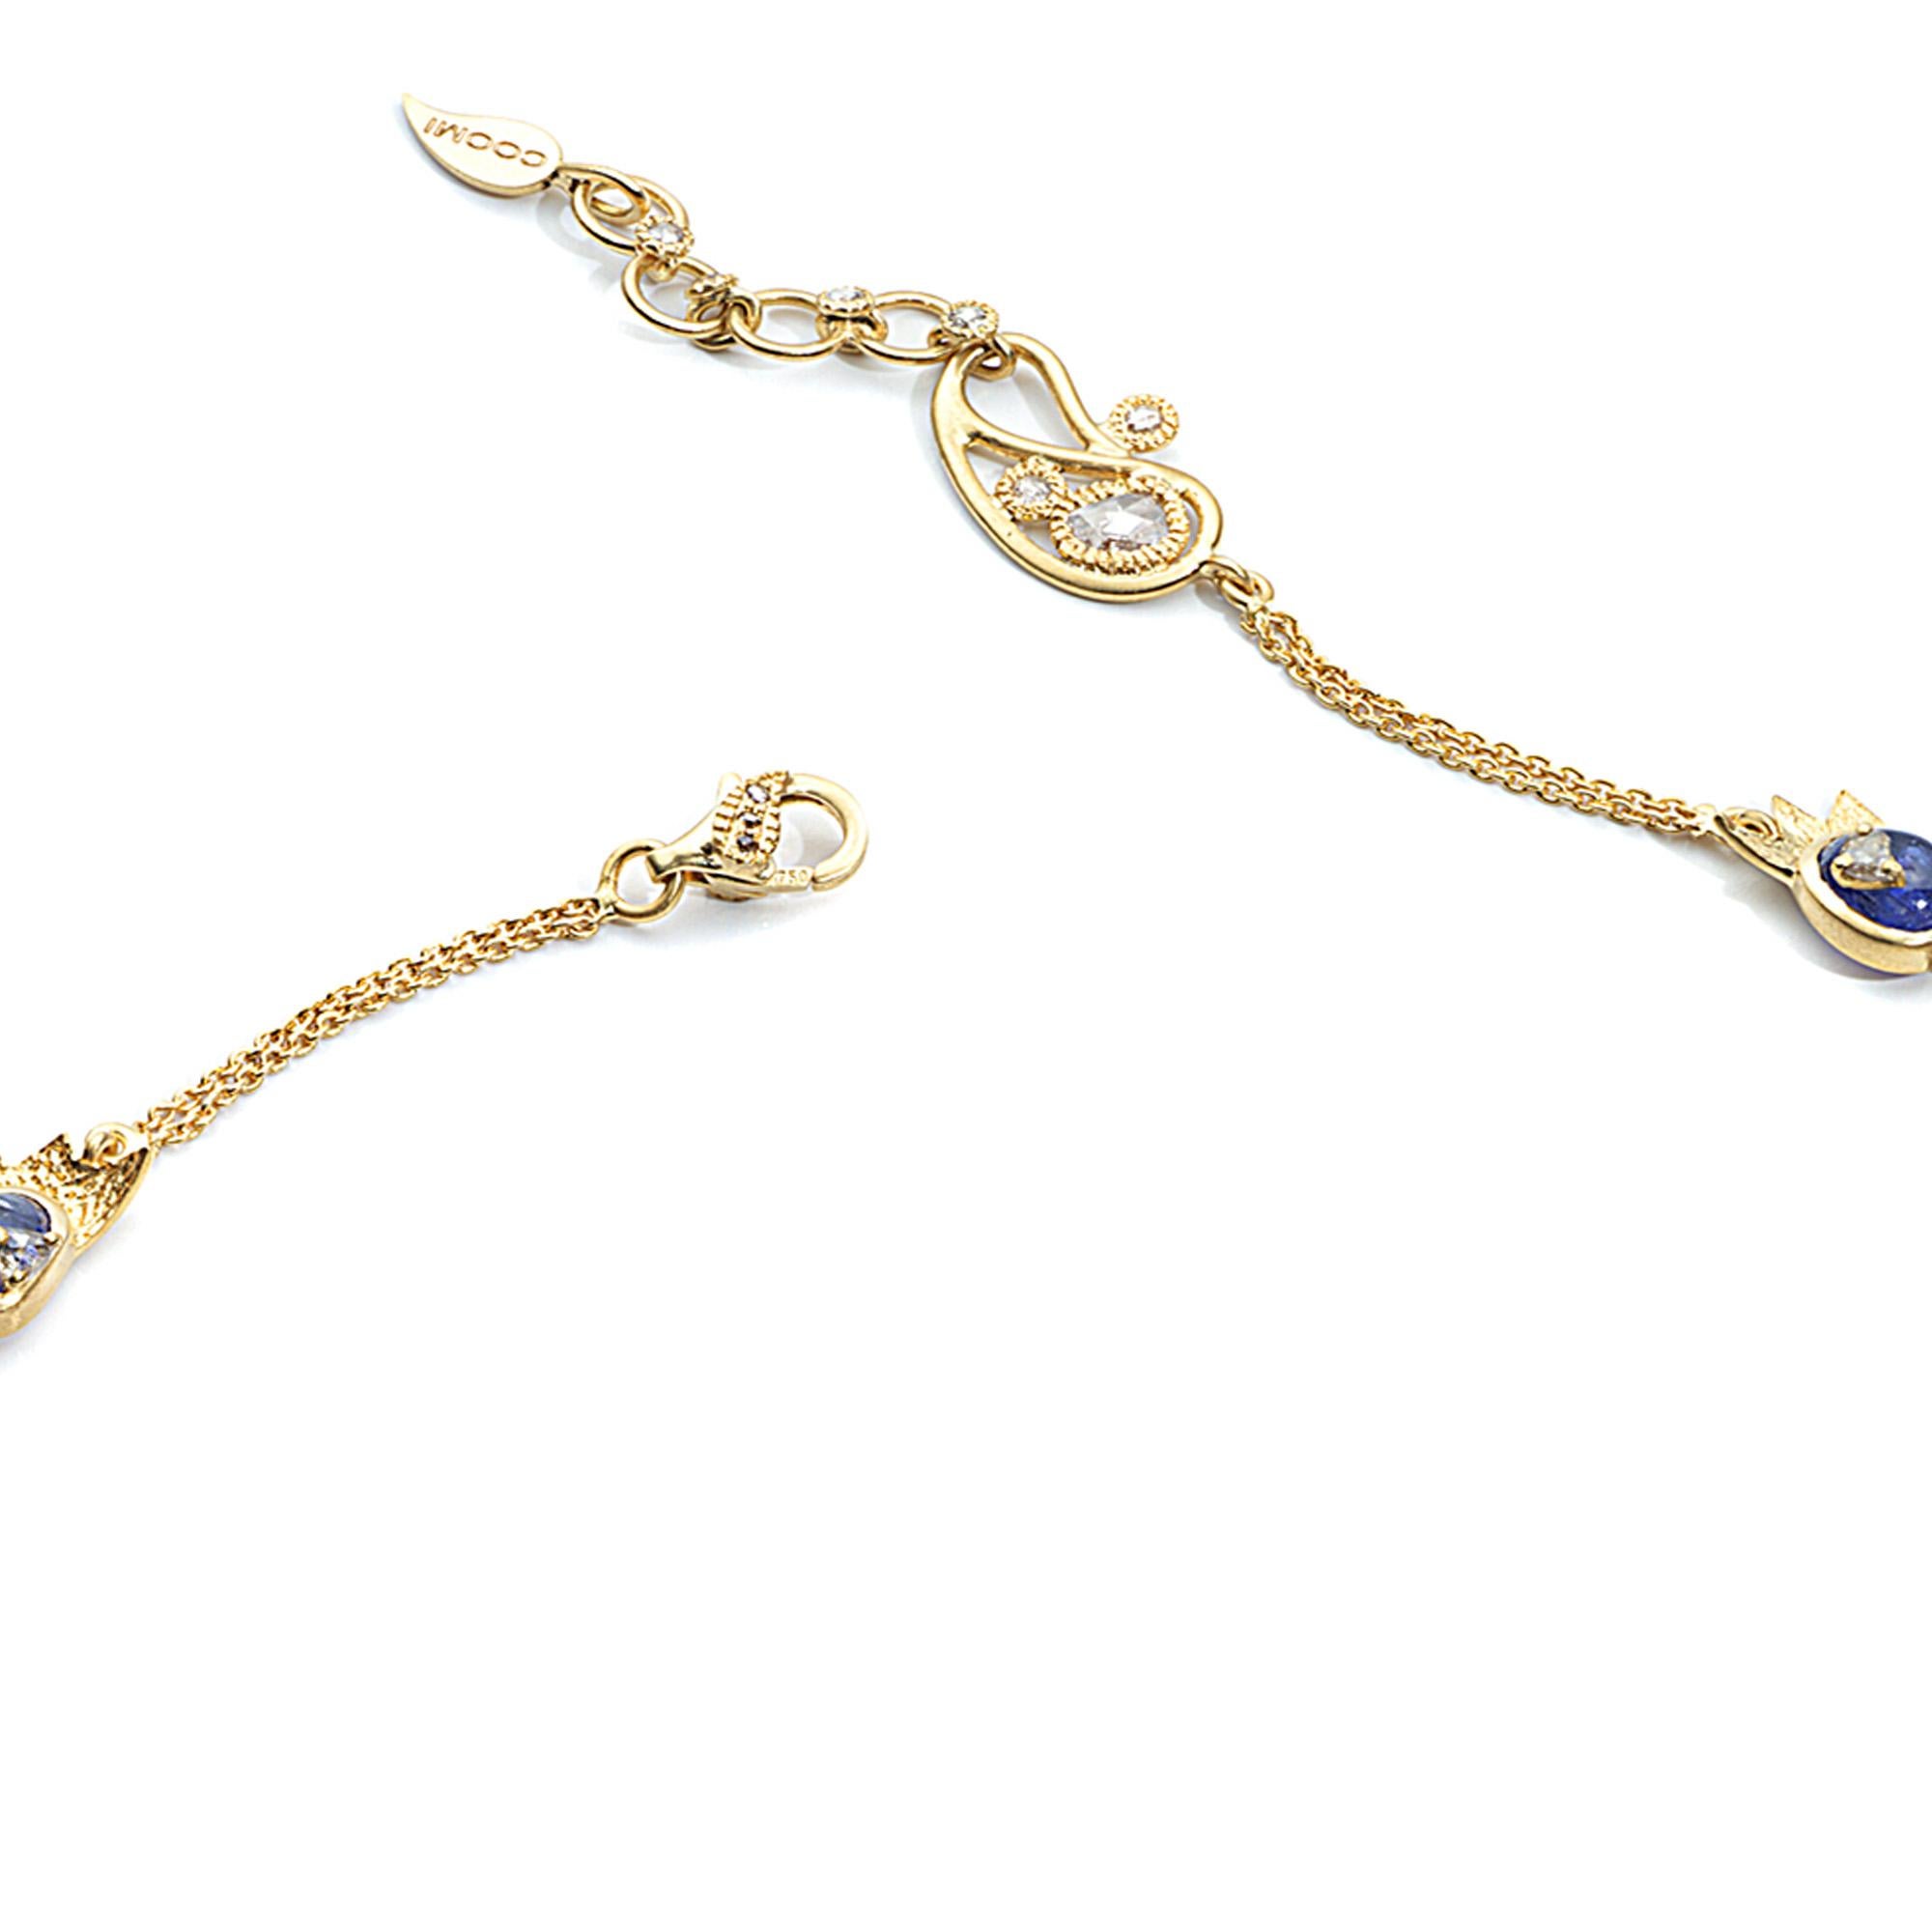 Sagrada Crescent Necklace Set in 20 karat Yellow Gold with 2.91-carat Diamonds and 27.20-carat Tanzanite. 